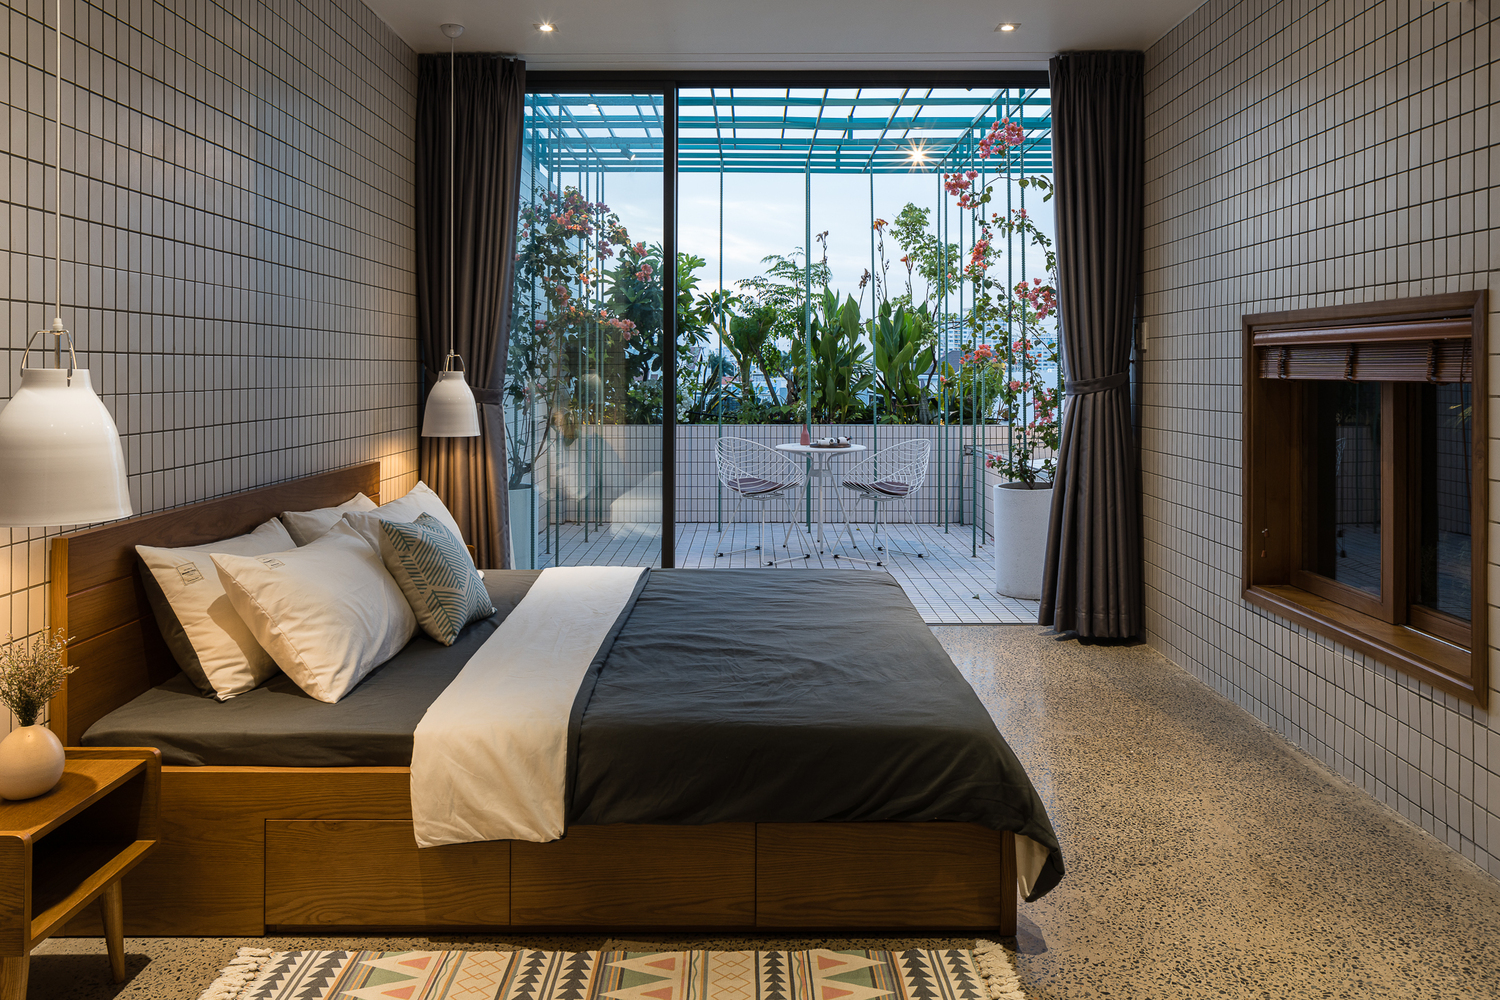 Phòng ngủ căn hộ ở tầng trên cùng có cửa kính trượt mở ra góc thư giãn lý tưởng nơi ban công, sân thượng nhà phố.